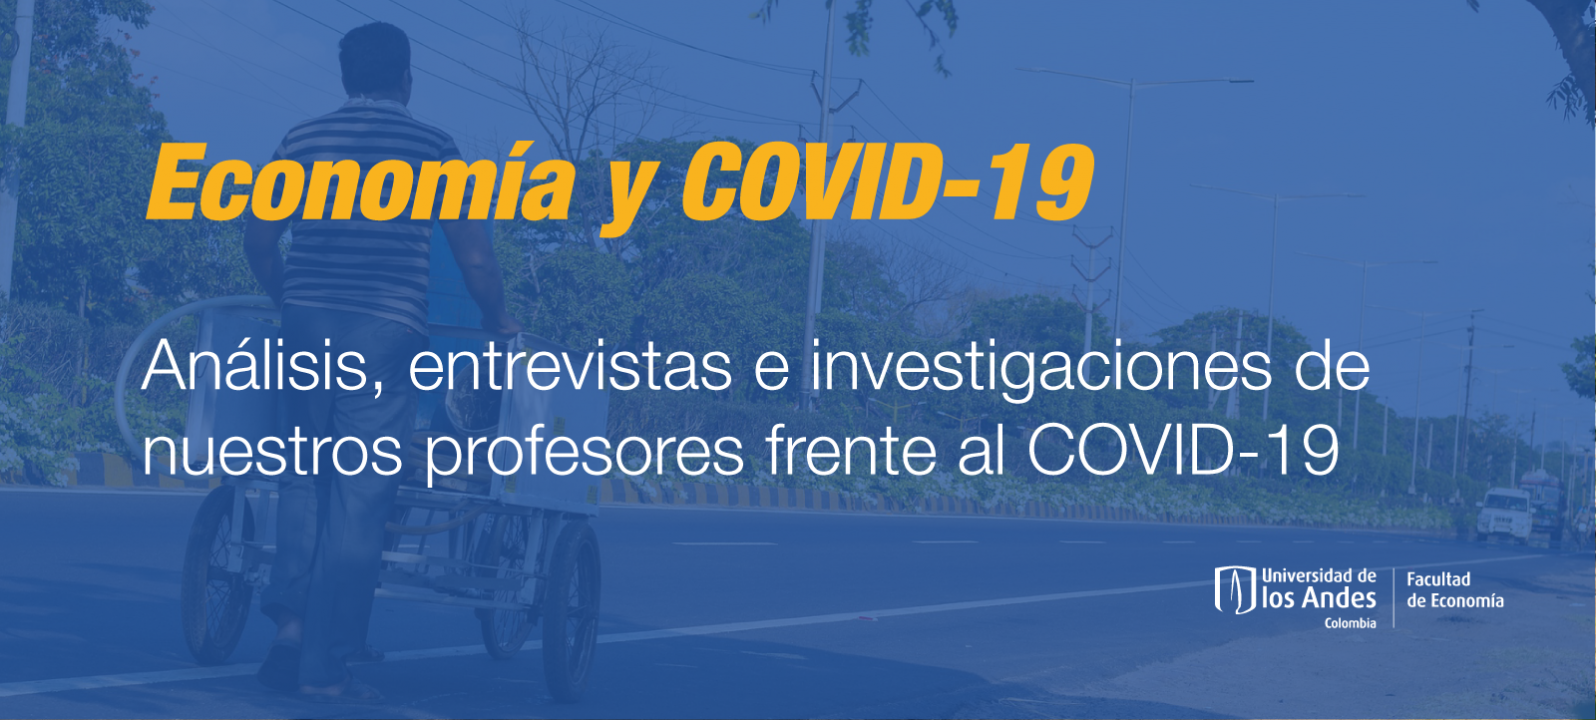 Economia-y-COVID19.png